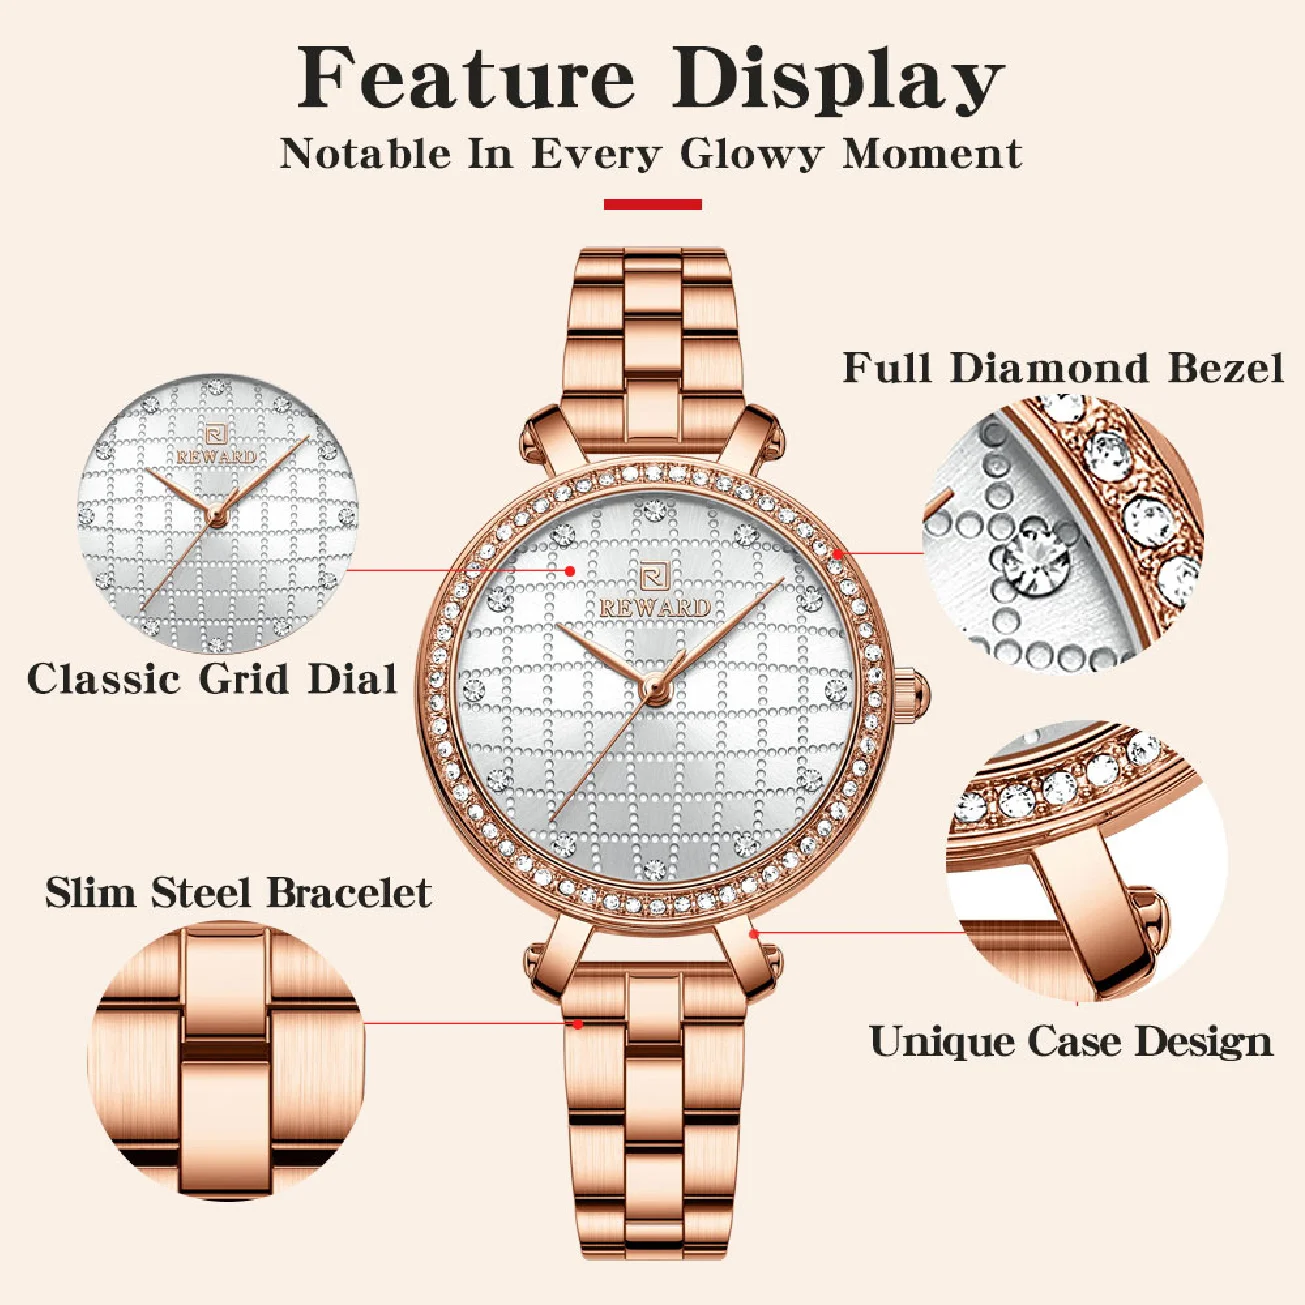 REWARD New RoseGold Watch Women Fashion Luxury Simple Women's Bracelet Quality Watches Stainless Steel Waterproof Wristwatch enlarge